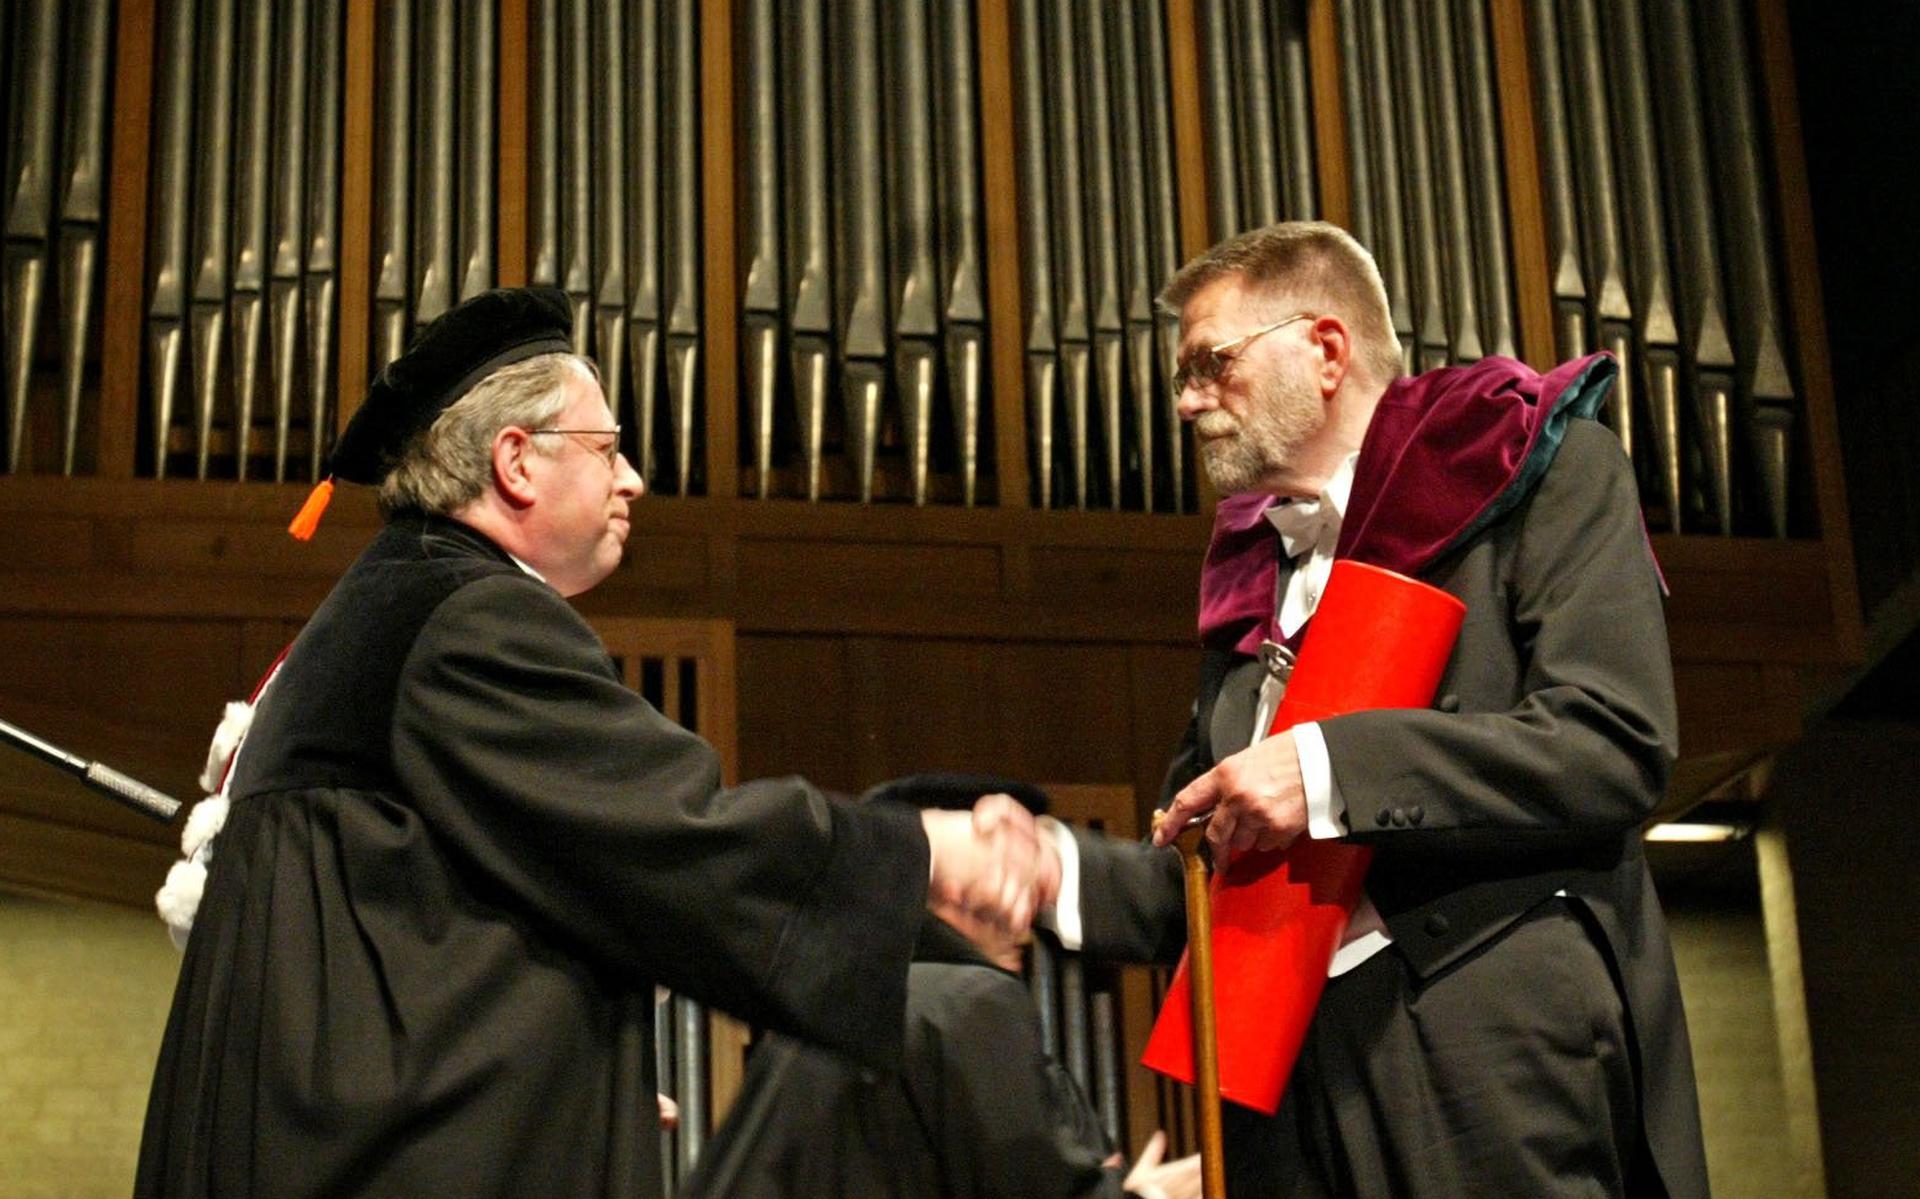 De Groningse schrijver en essayist Gerrit Krol ontving in 2005 een eredoctoraat aan de Vrije Universiteit (VU) in Amsterdam.